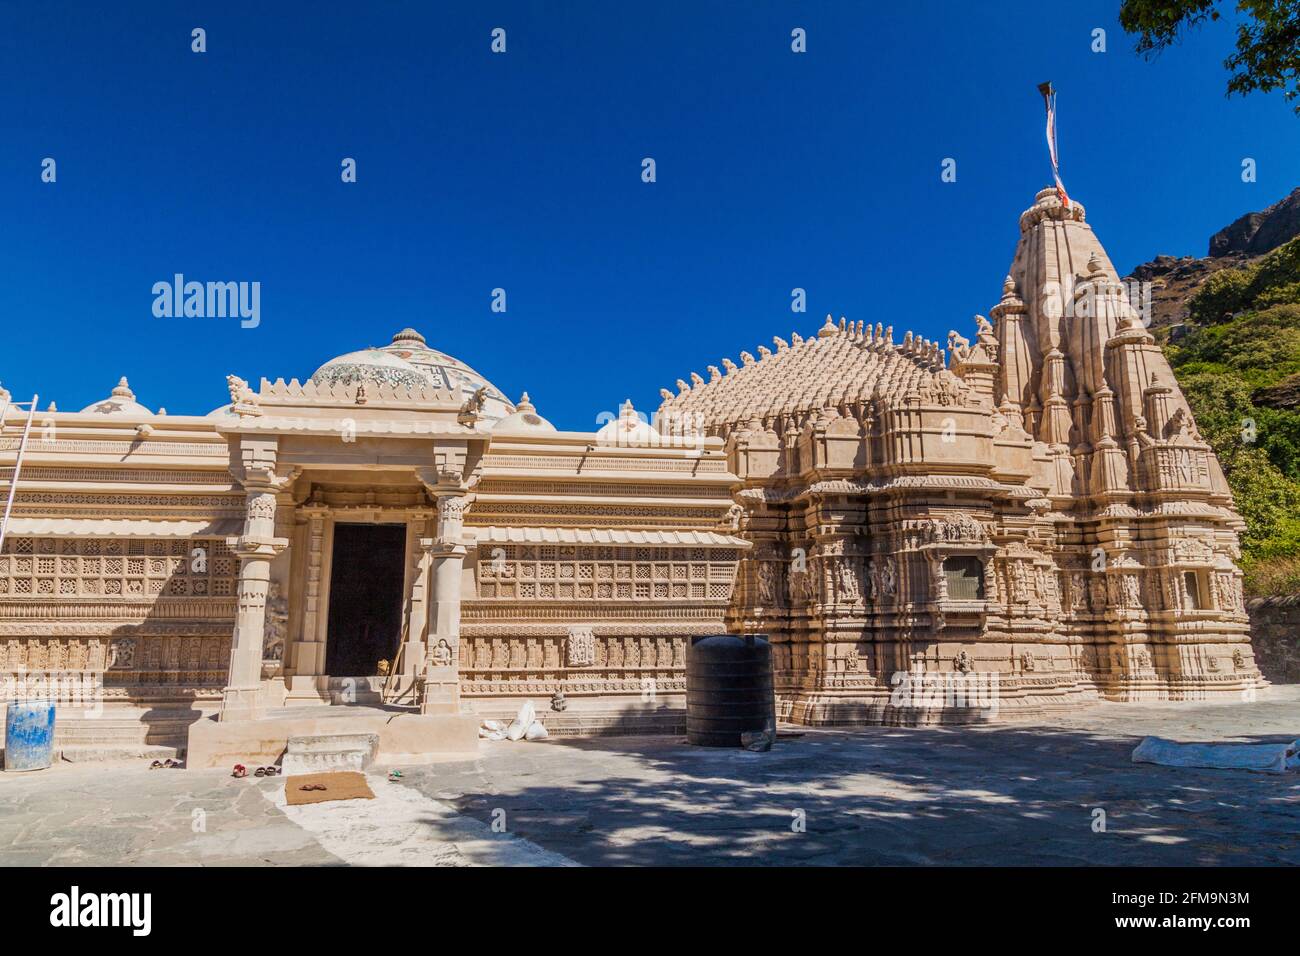 Jain temple at Girnar Hill, Gujarat state, India Stock Photo